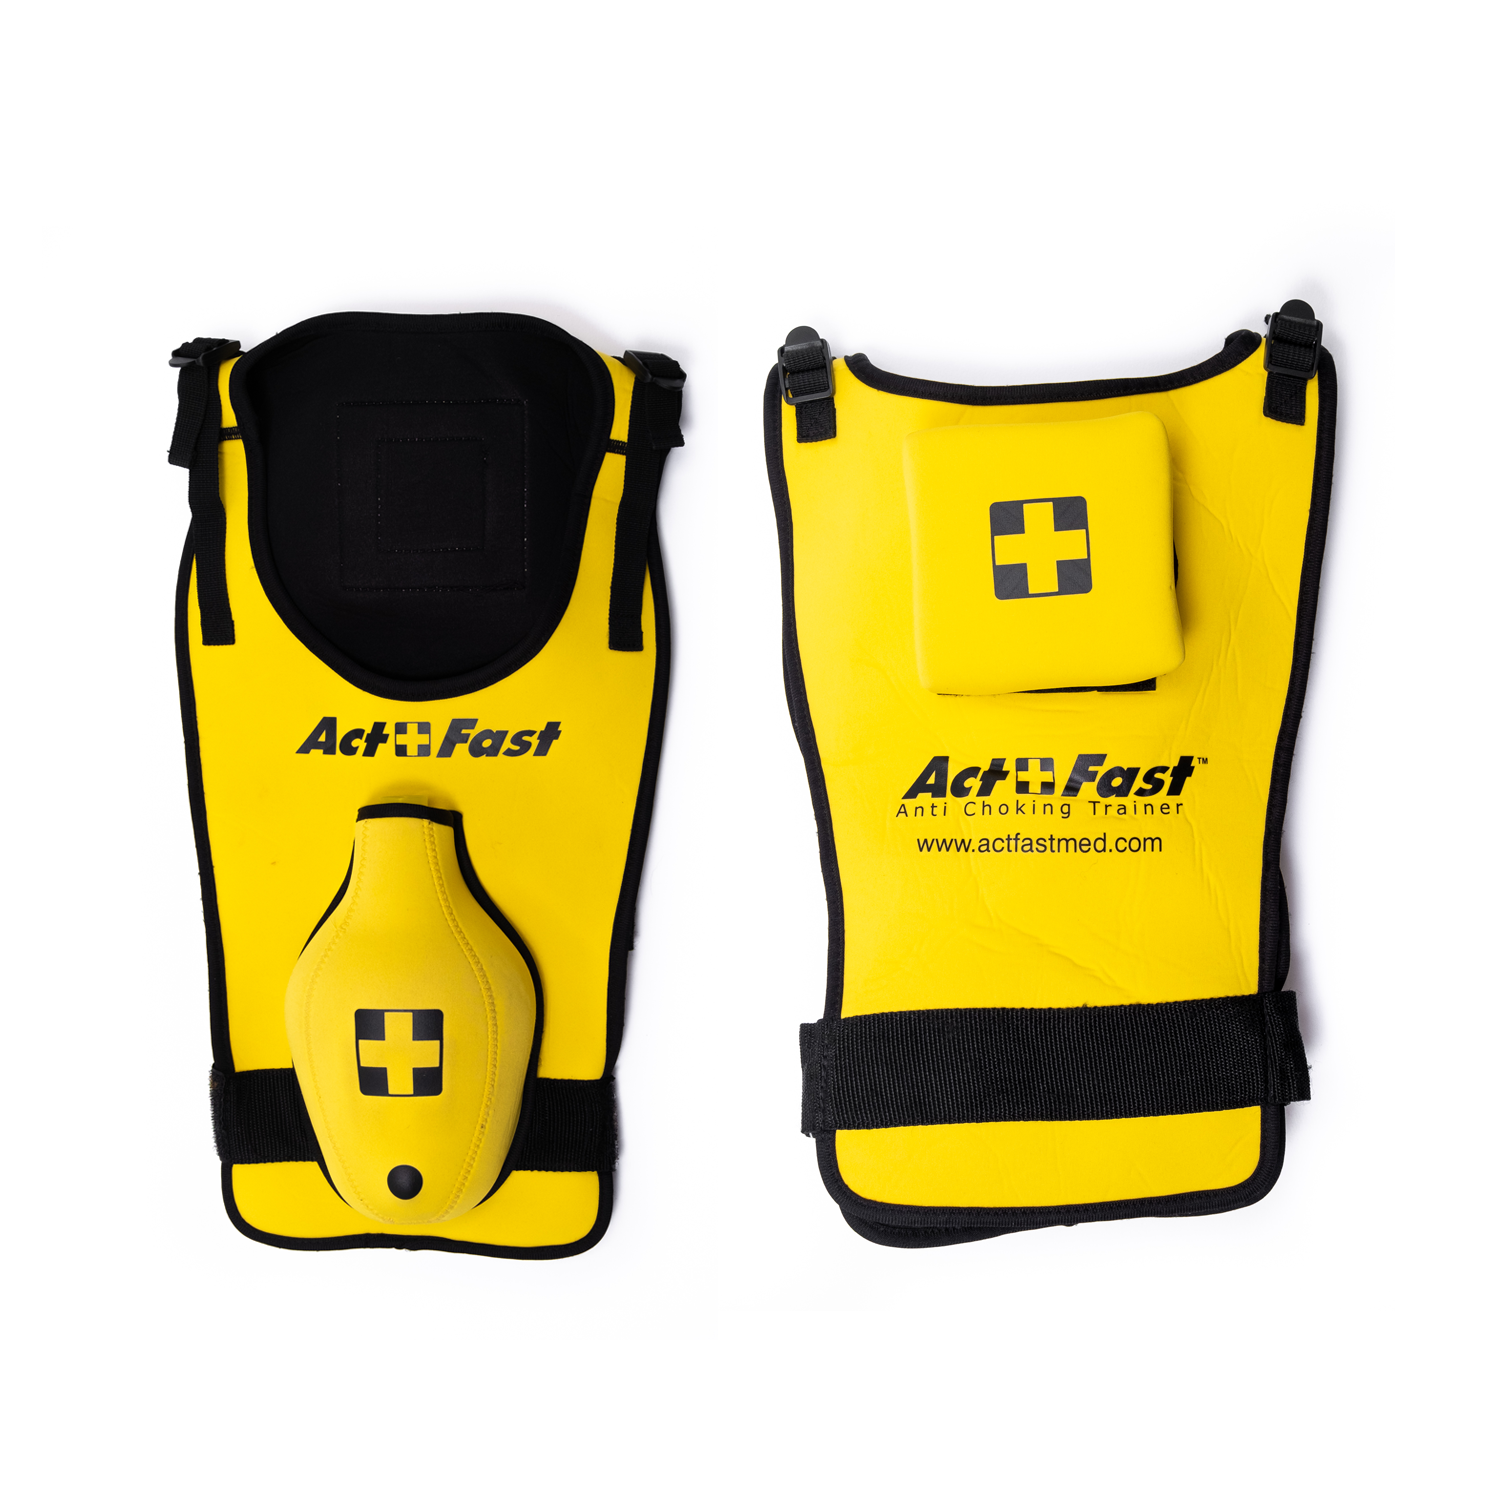 Actfast Anti Choking Trainer